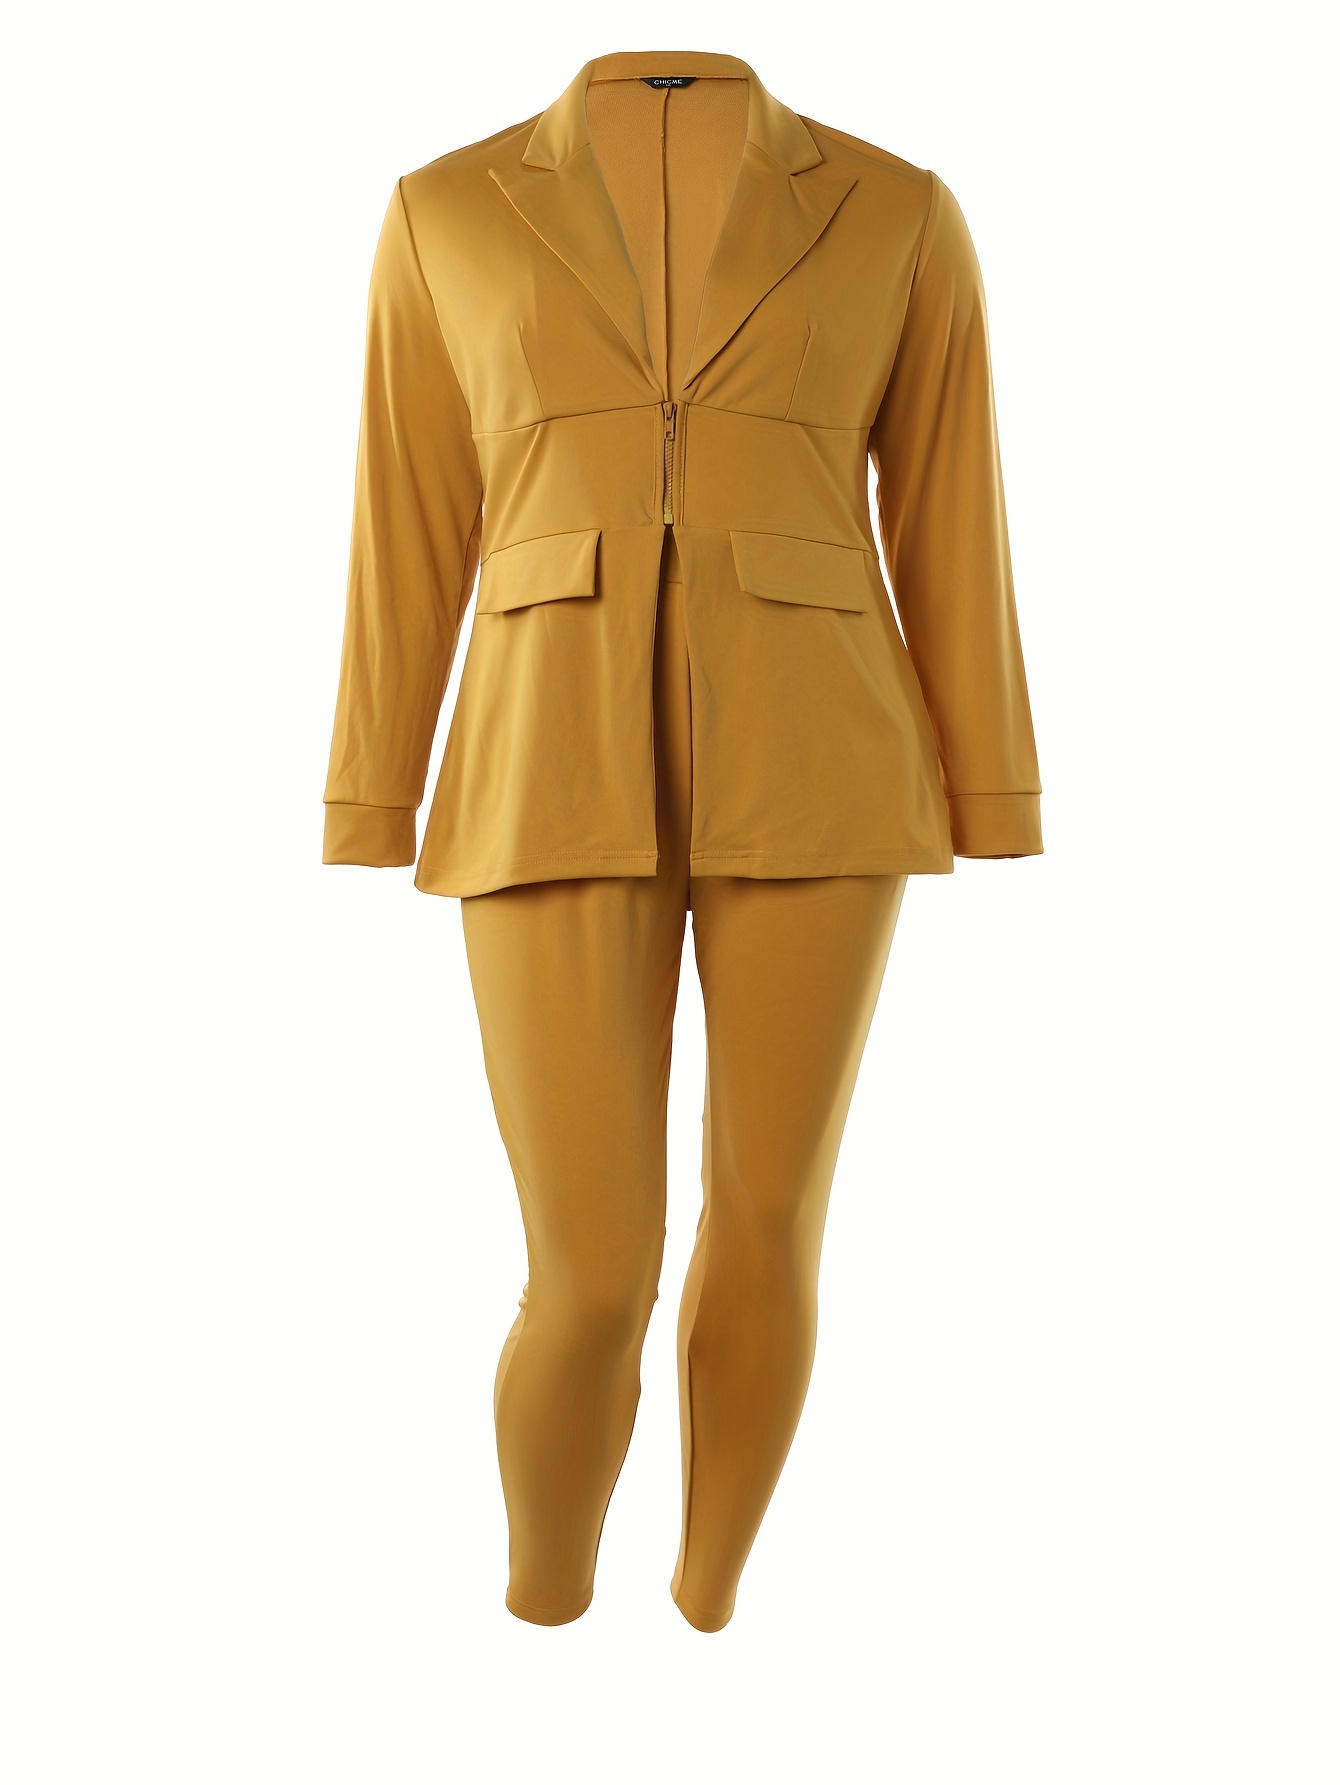 Conjuntos elegantes de negocios para mujer, conjunto de dos piezas de  chaqueta blazer y pantalones de pierna ancha, conjuntos de traje elegante y